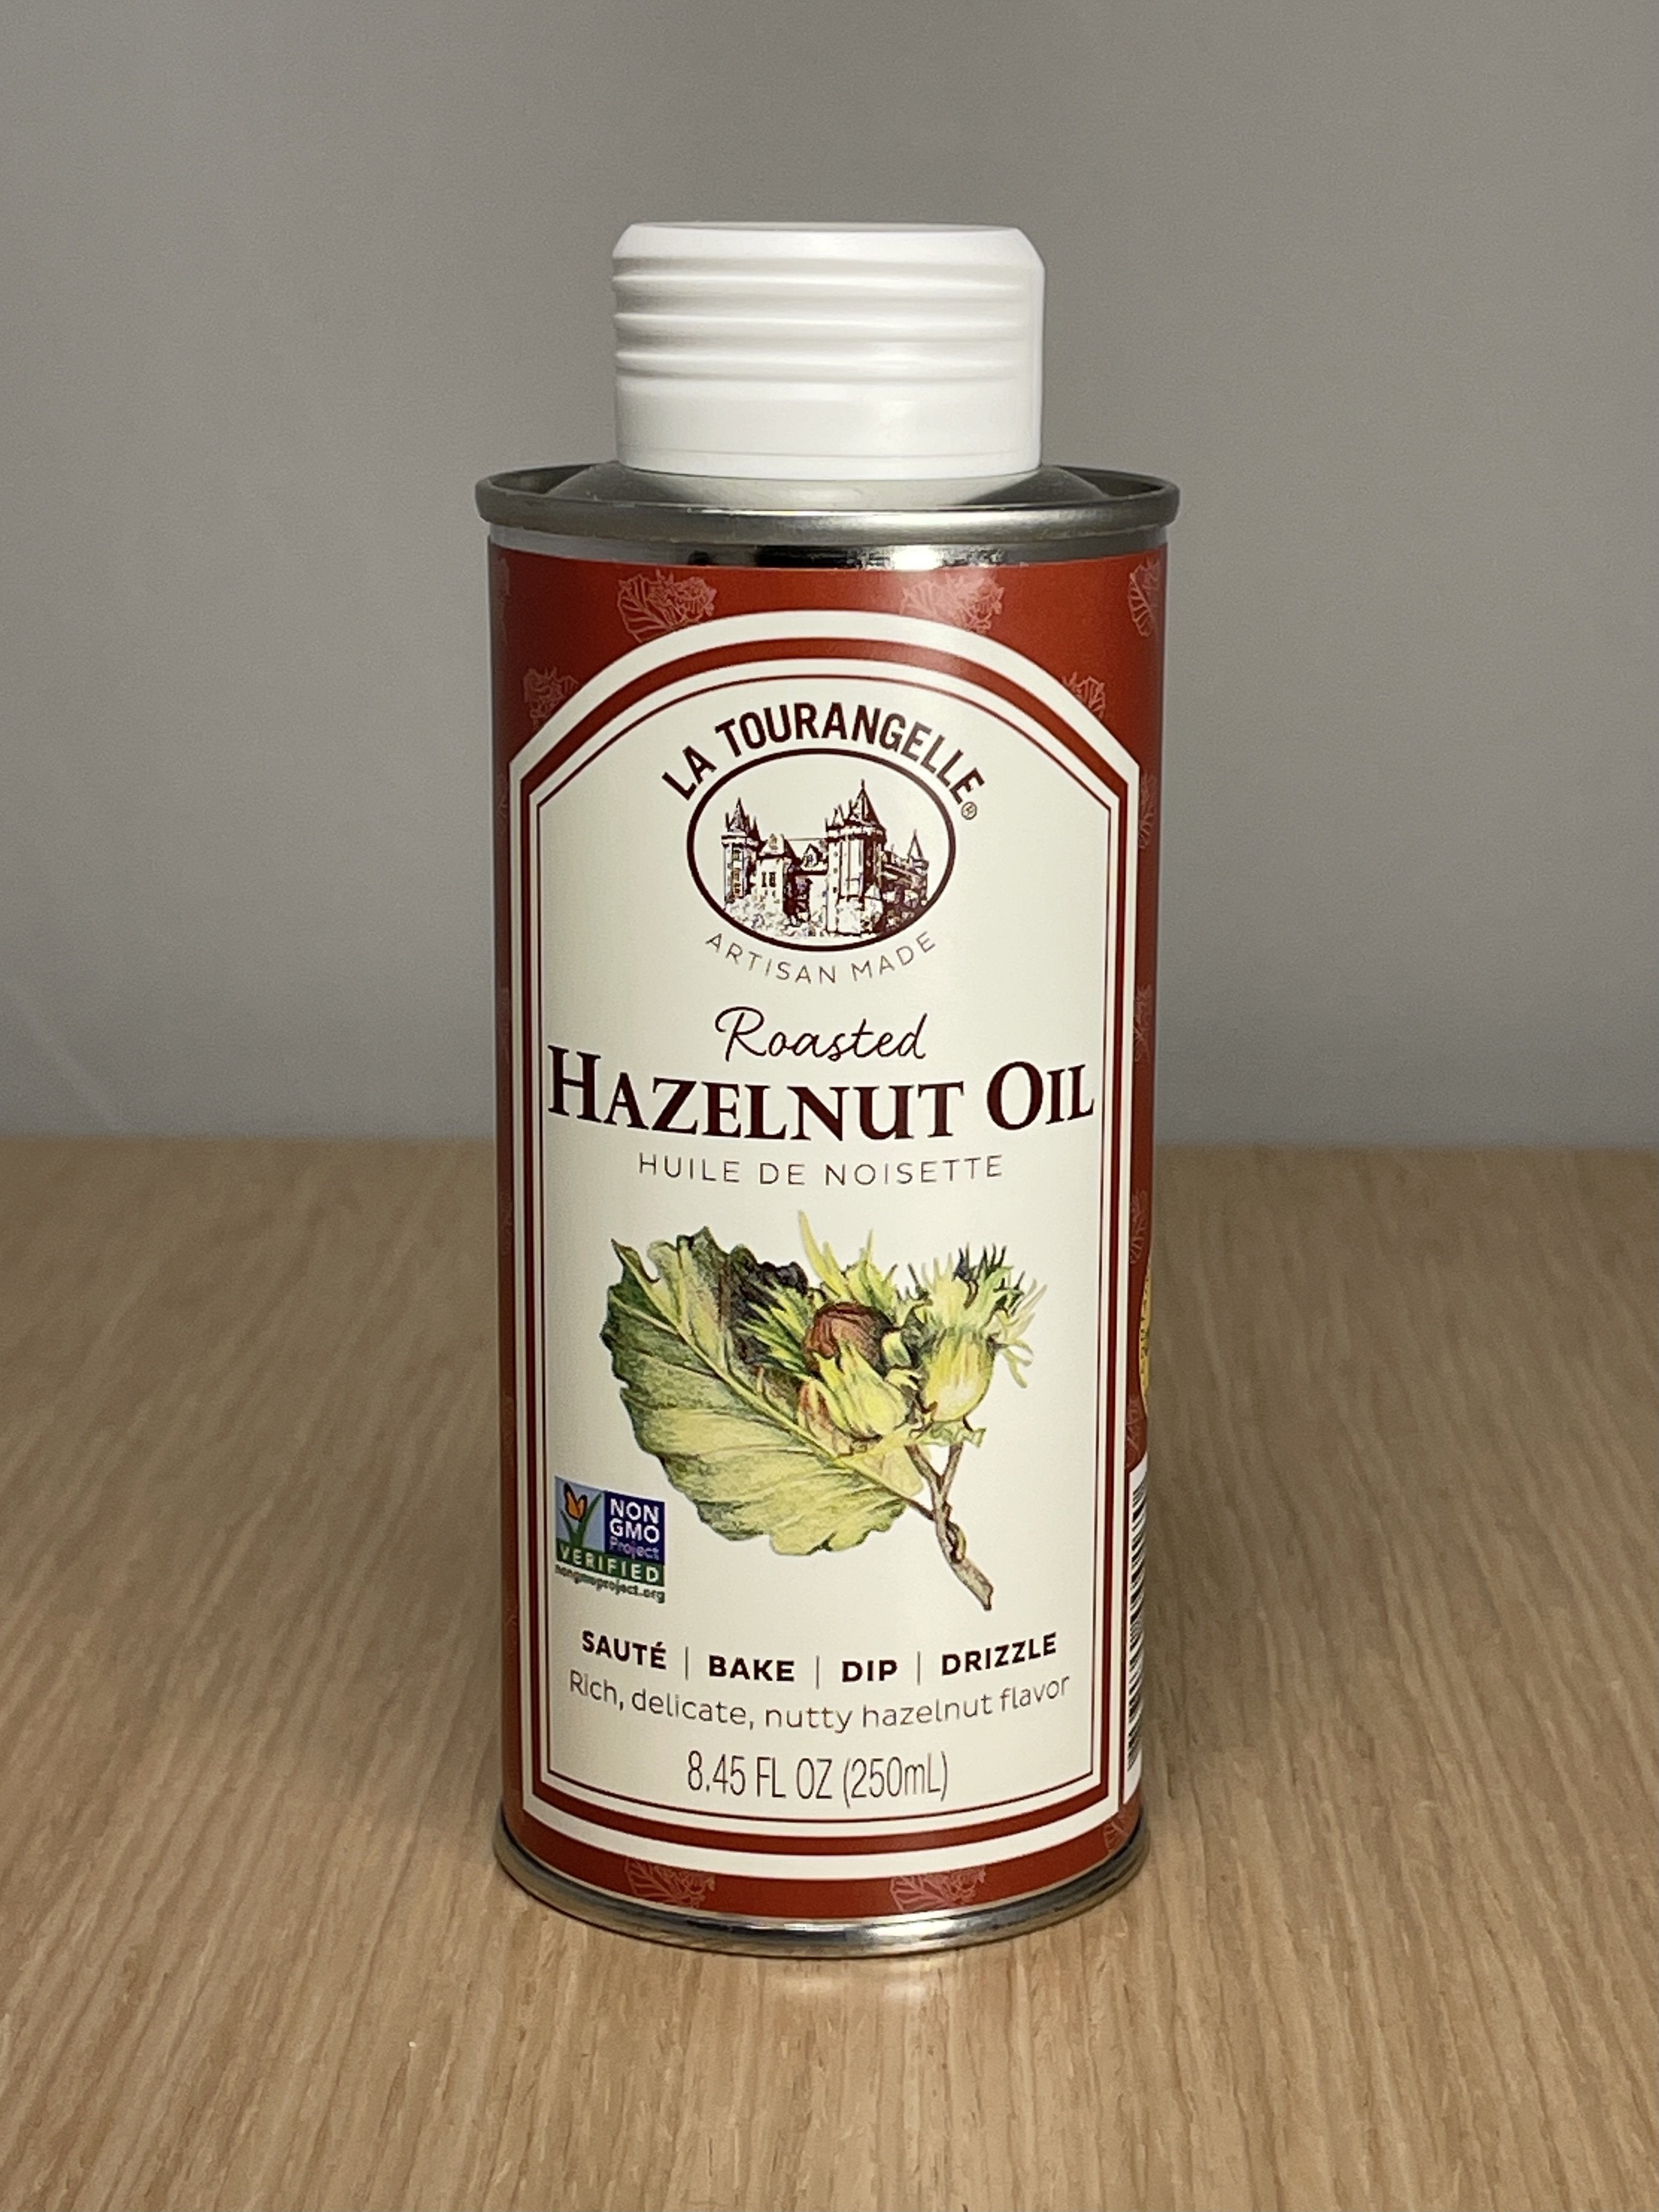 La Tourangelle Roasted Hazelnut Oil 8.45 oz bottle